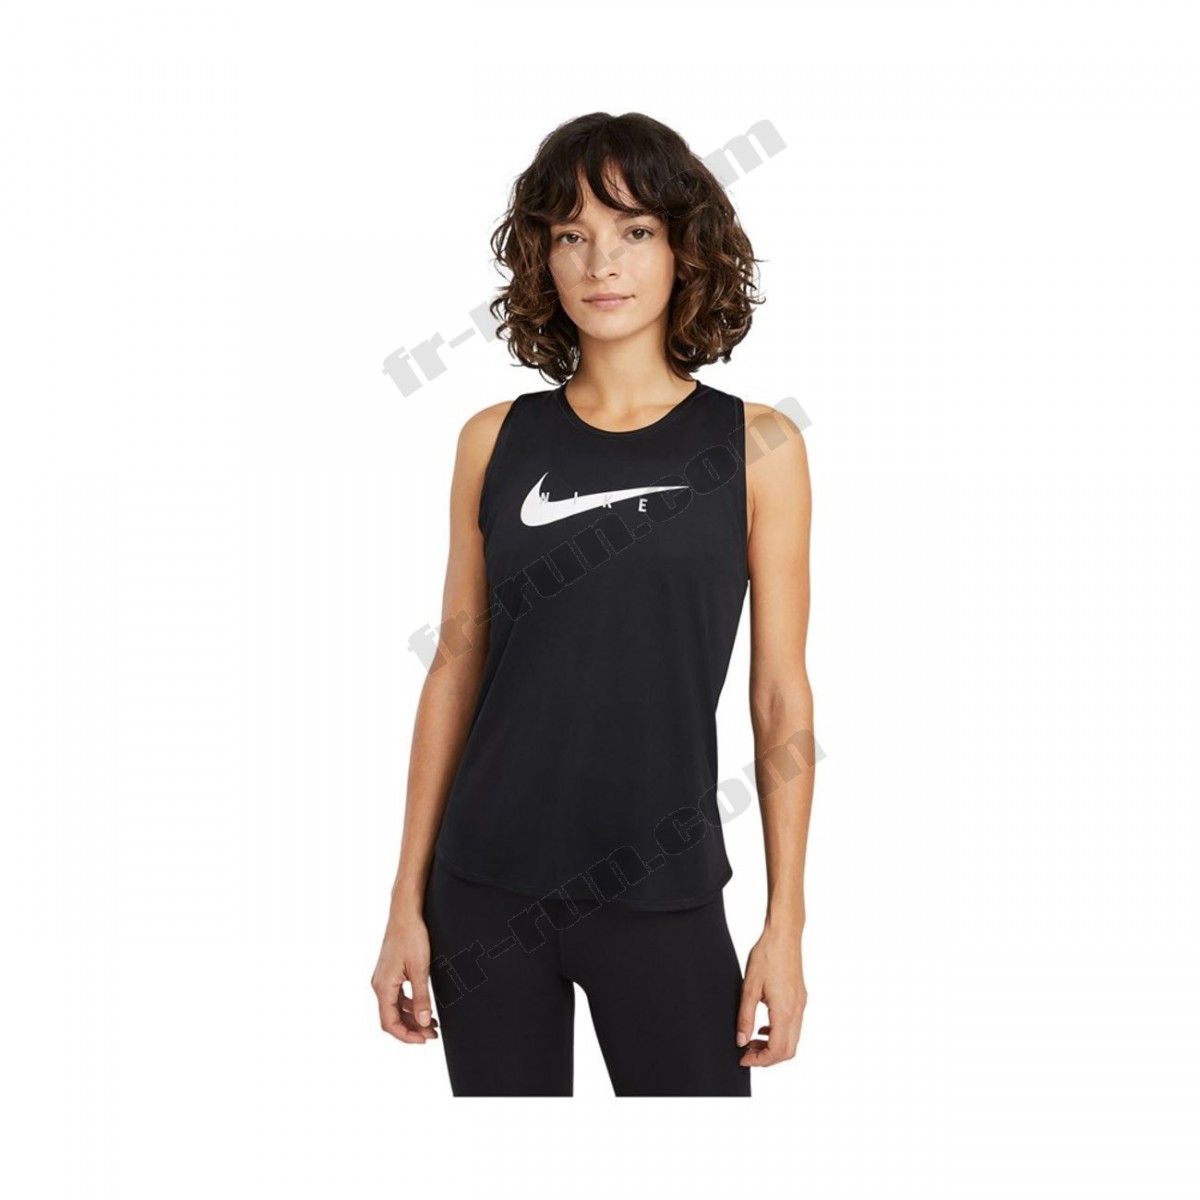 Nike/running femme NIKE Nike Wmns Swoosh Run Top ◇◇◇ Pas Cher Du Tout - -0